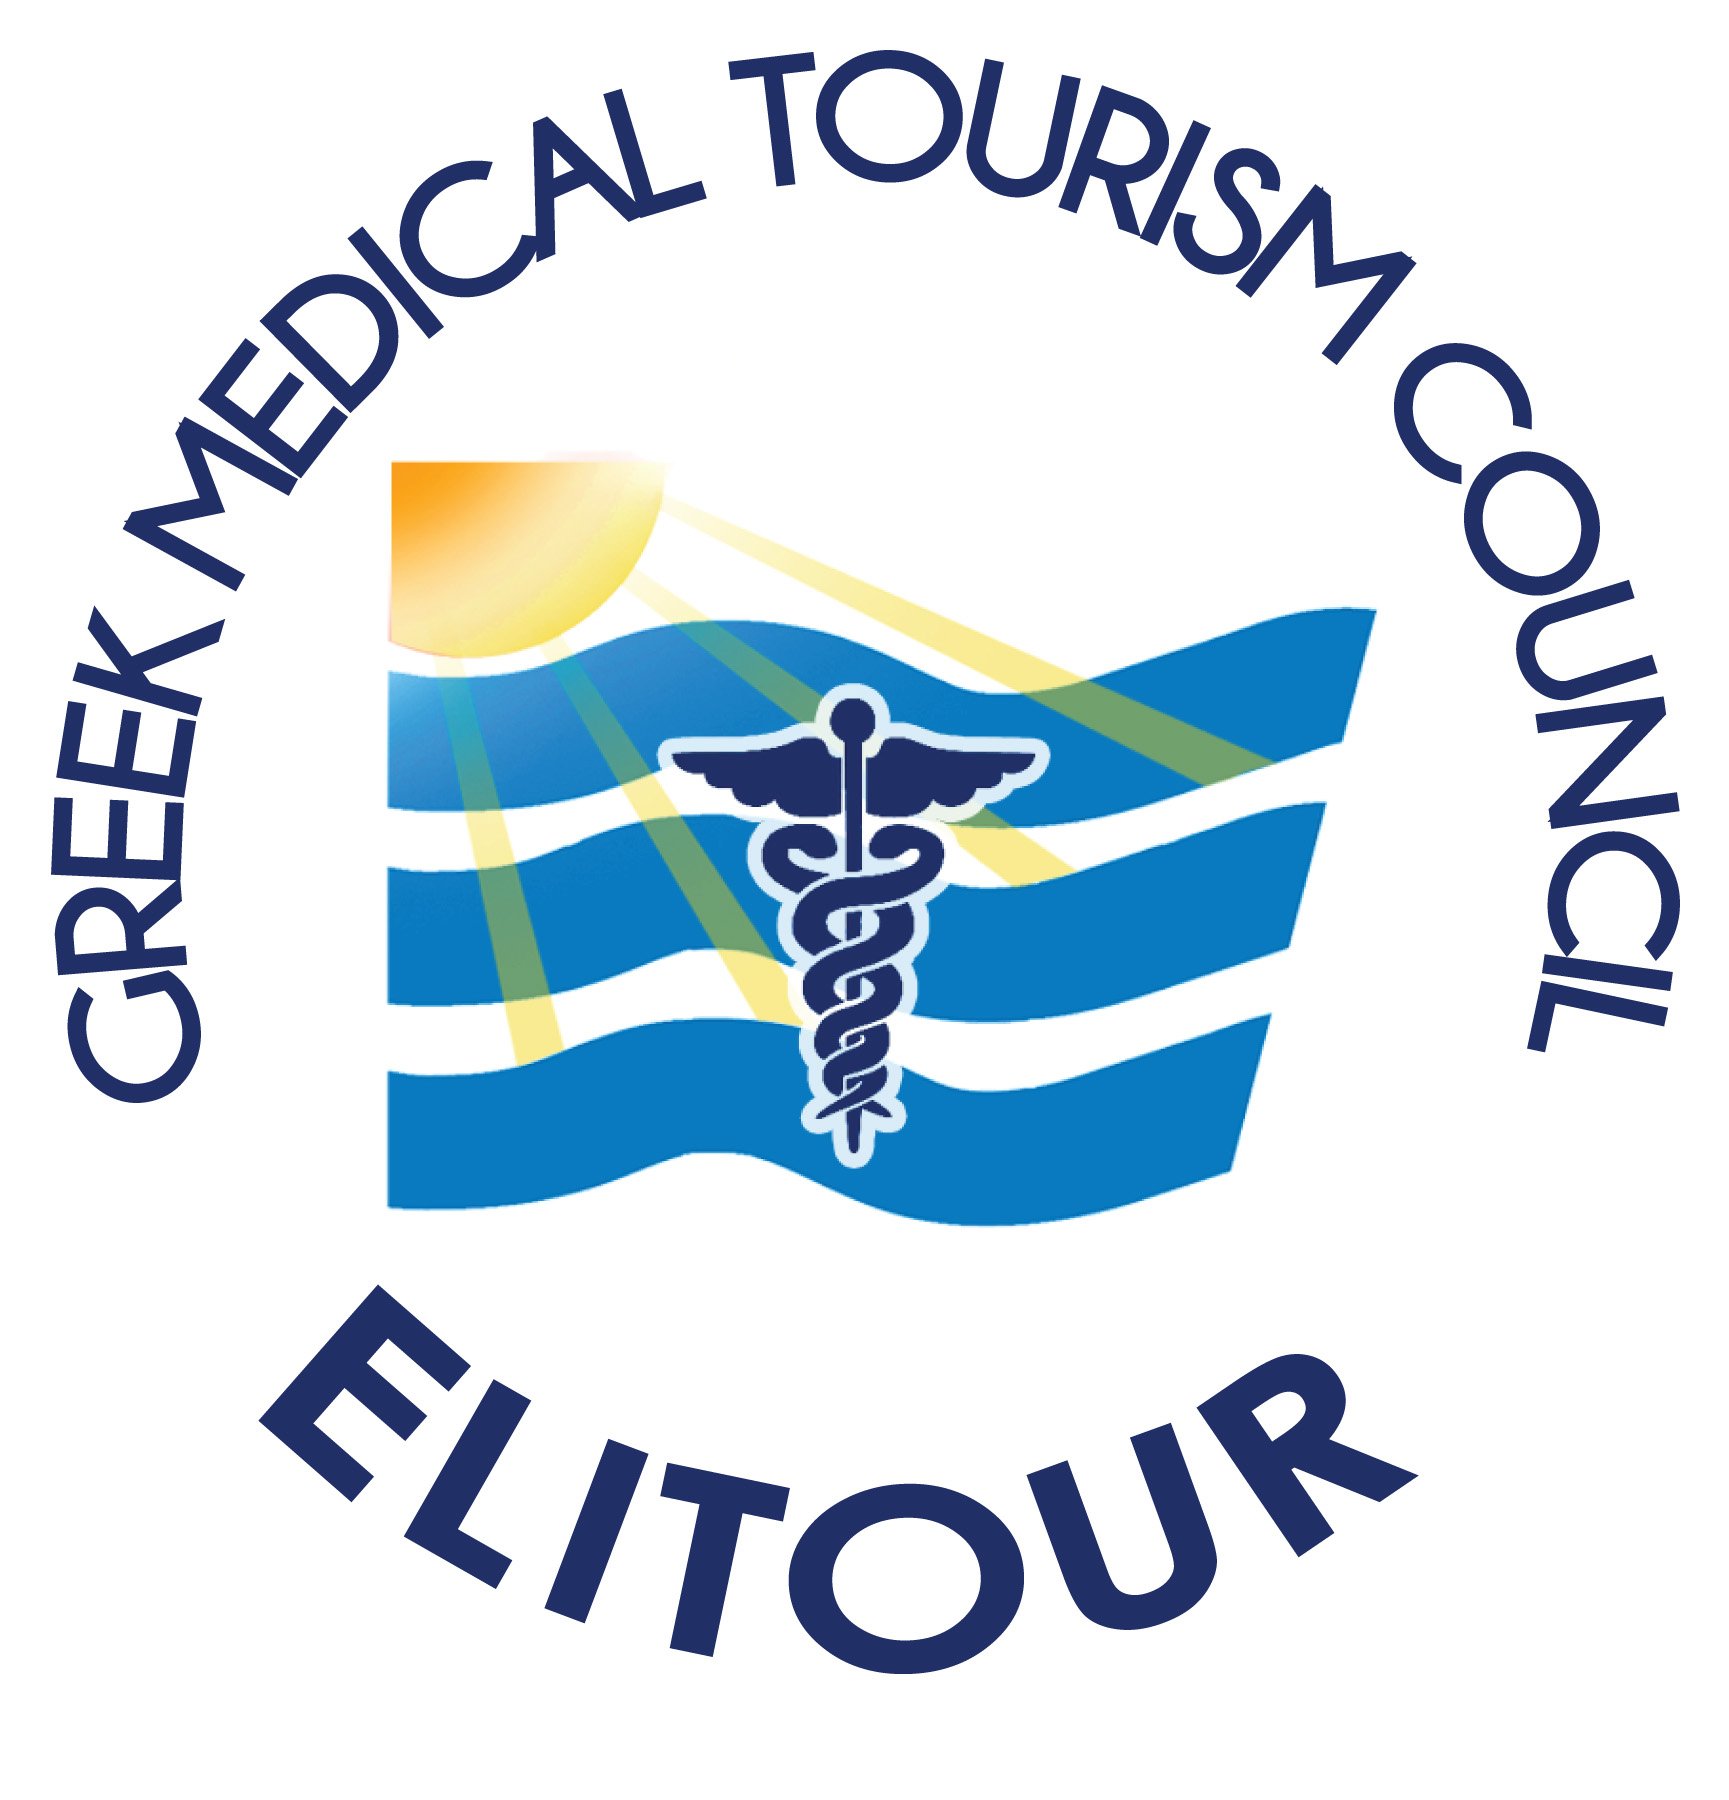 Συμμετοχή της ΕΛΙΤΟΥΡ ως χρυσός χορηγός στη διεθνή έκθεση ιατρικού τουρισμού στο Dubai με την υποστήριξη του ΕΟΤ